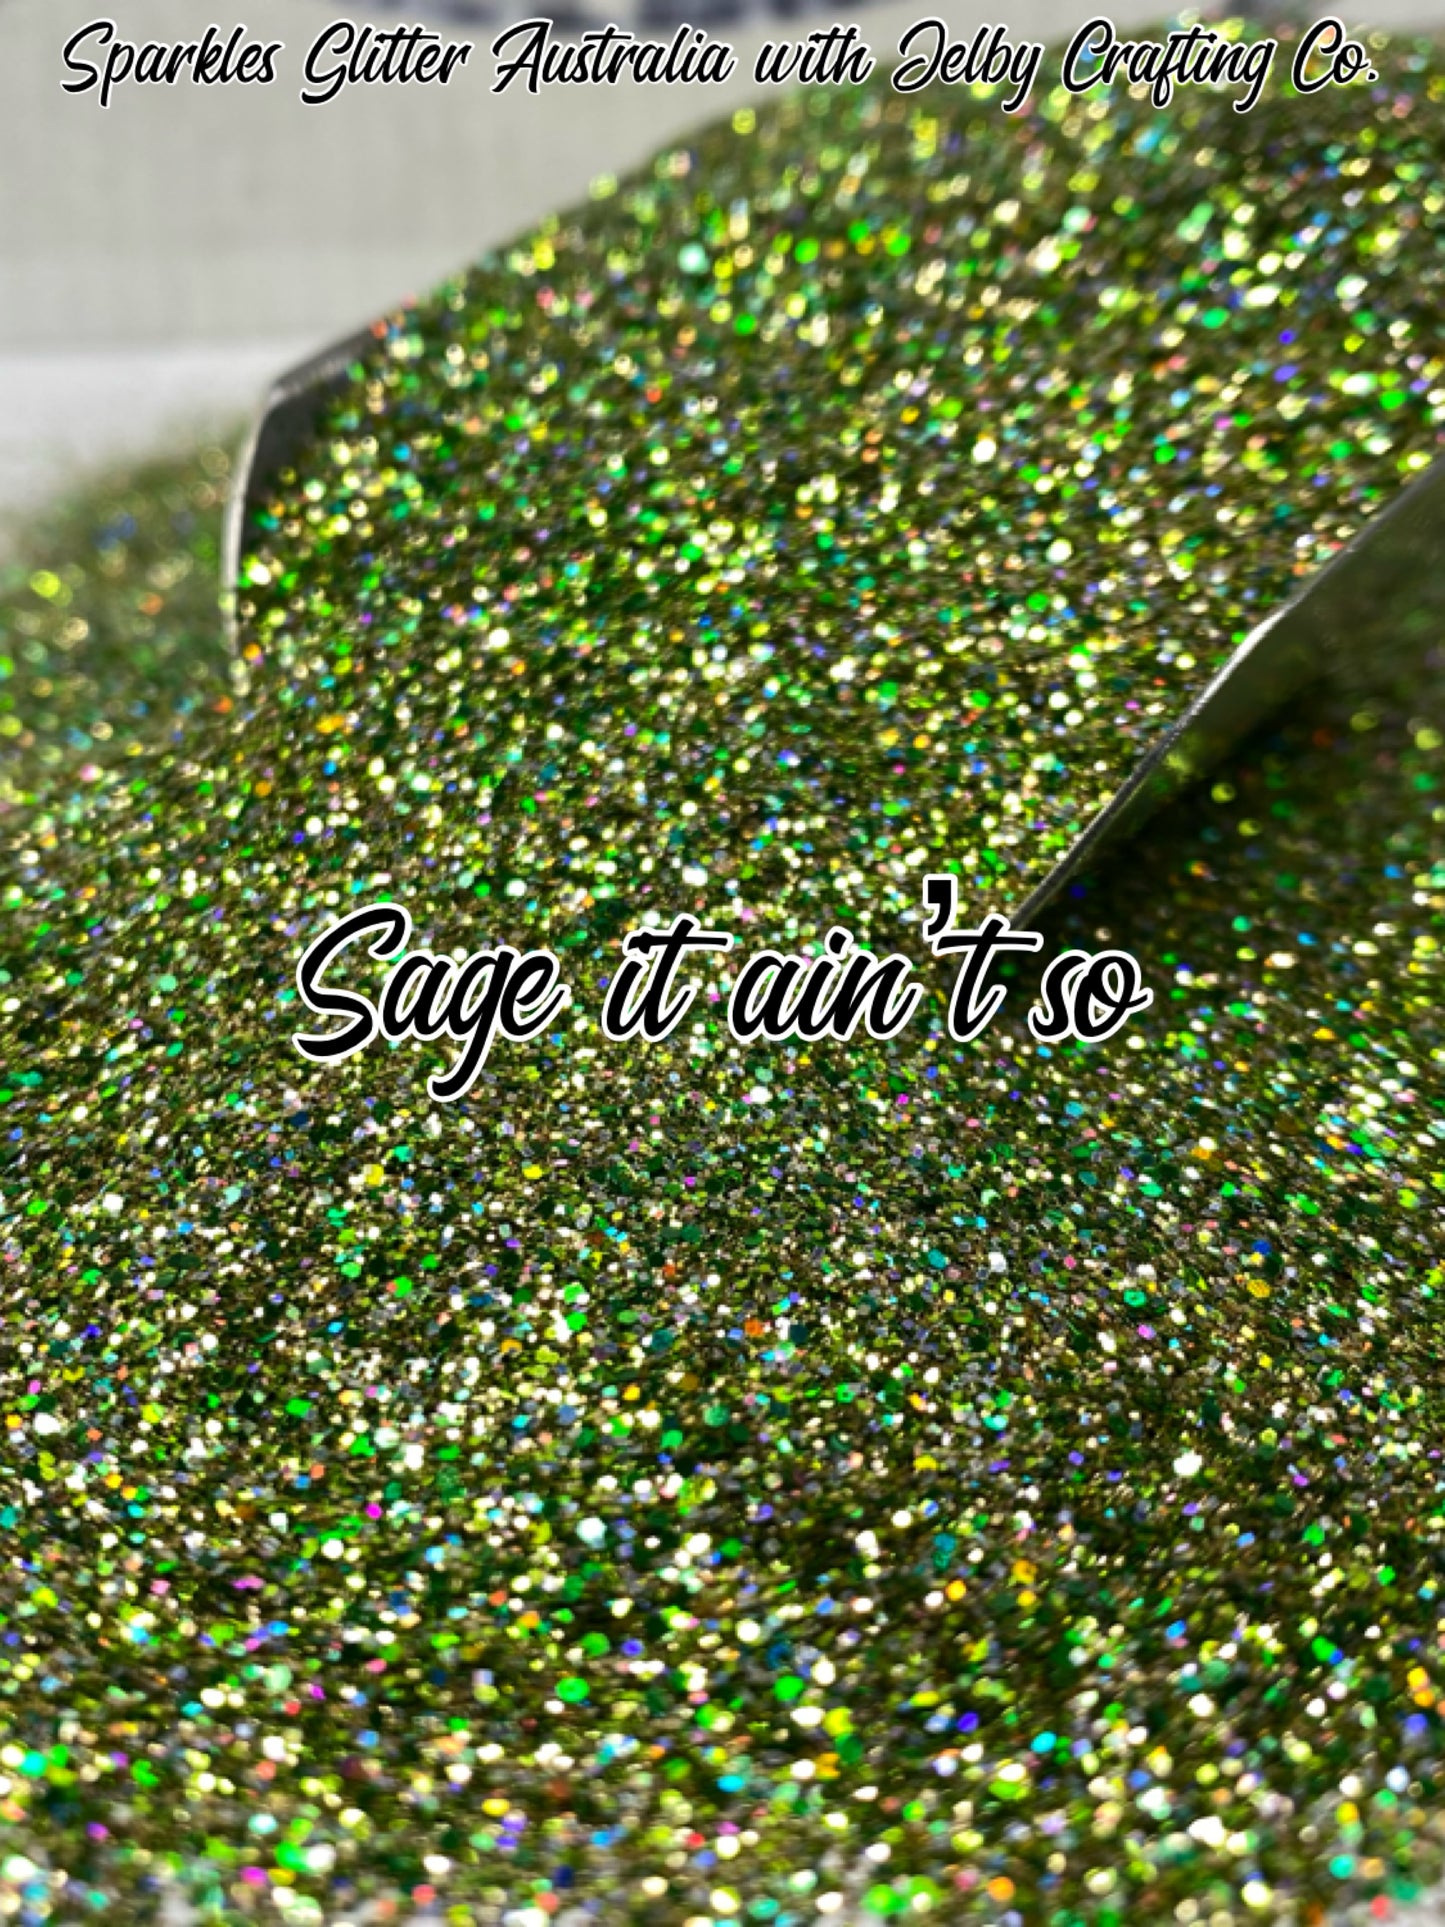 Sage it ain’t so! | Custom Mixed Green Glitter